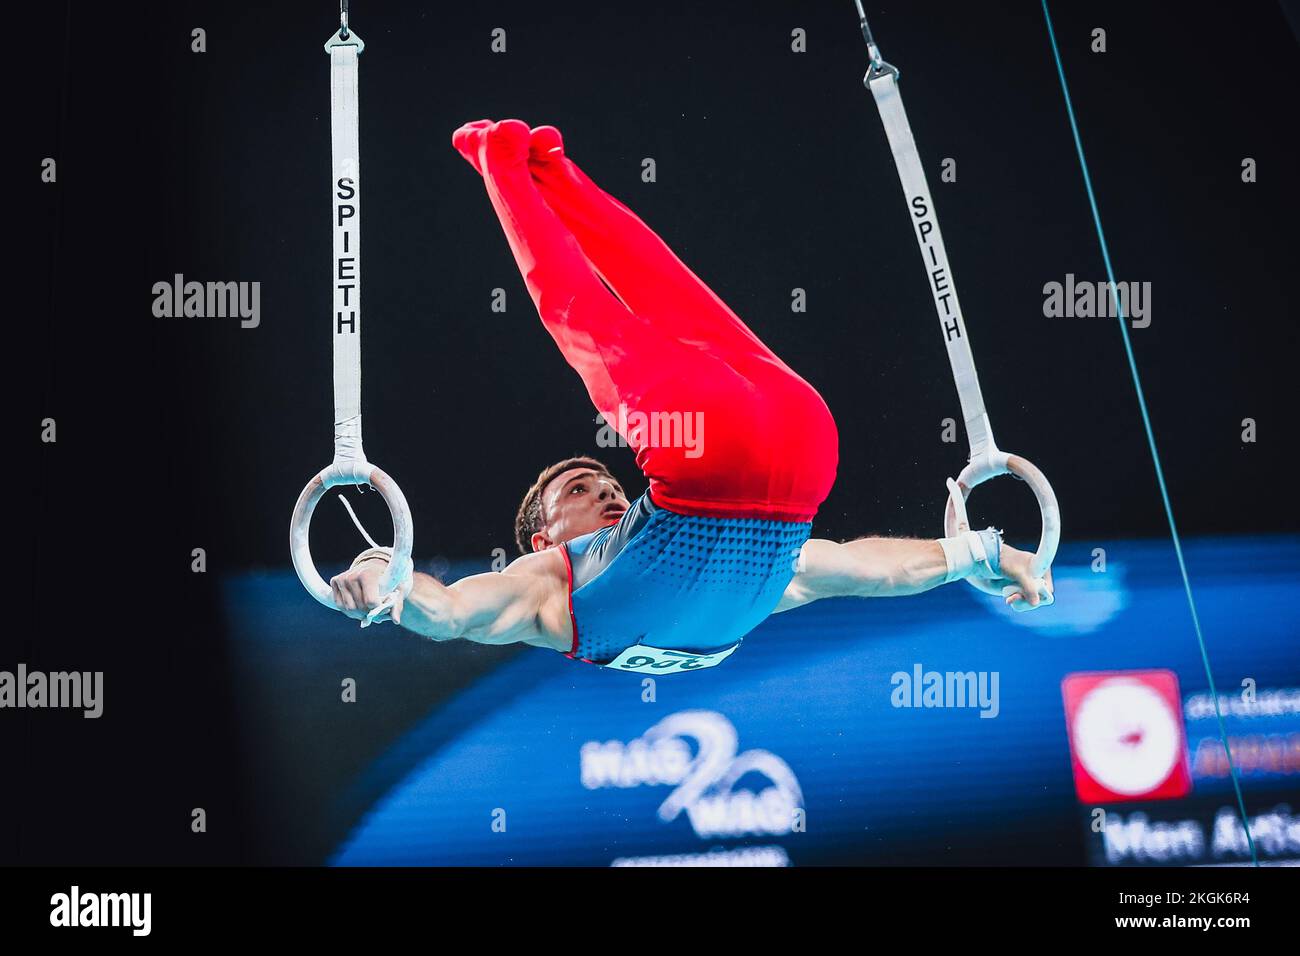 Szczecin, Pologne, 10 avril 2019: L'athlète arménien de sexe masculin Tovmasyan Artur est en compétition sur les anneaux lors des championnats européens de gymnastique artistique Banque D'Images